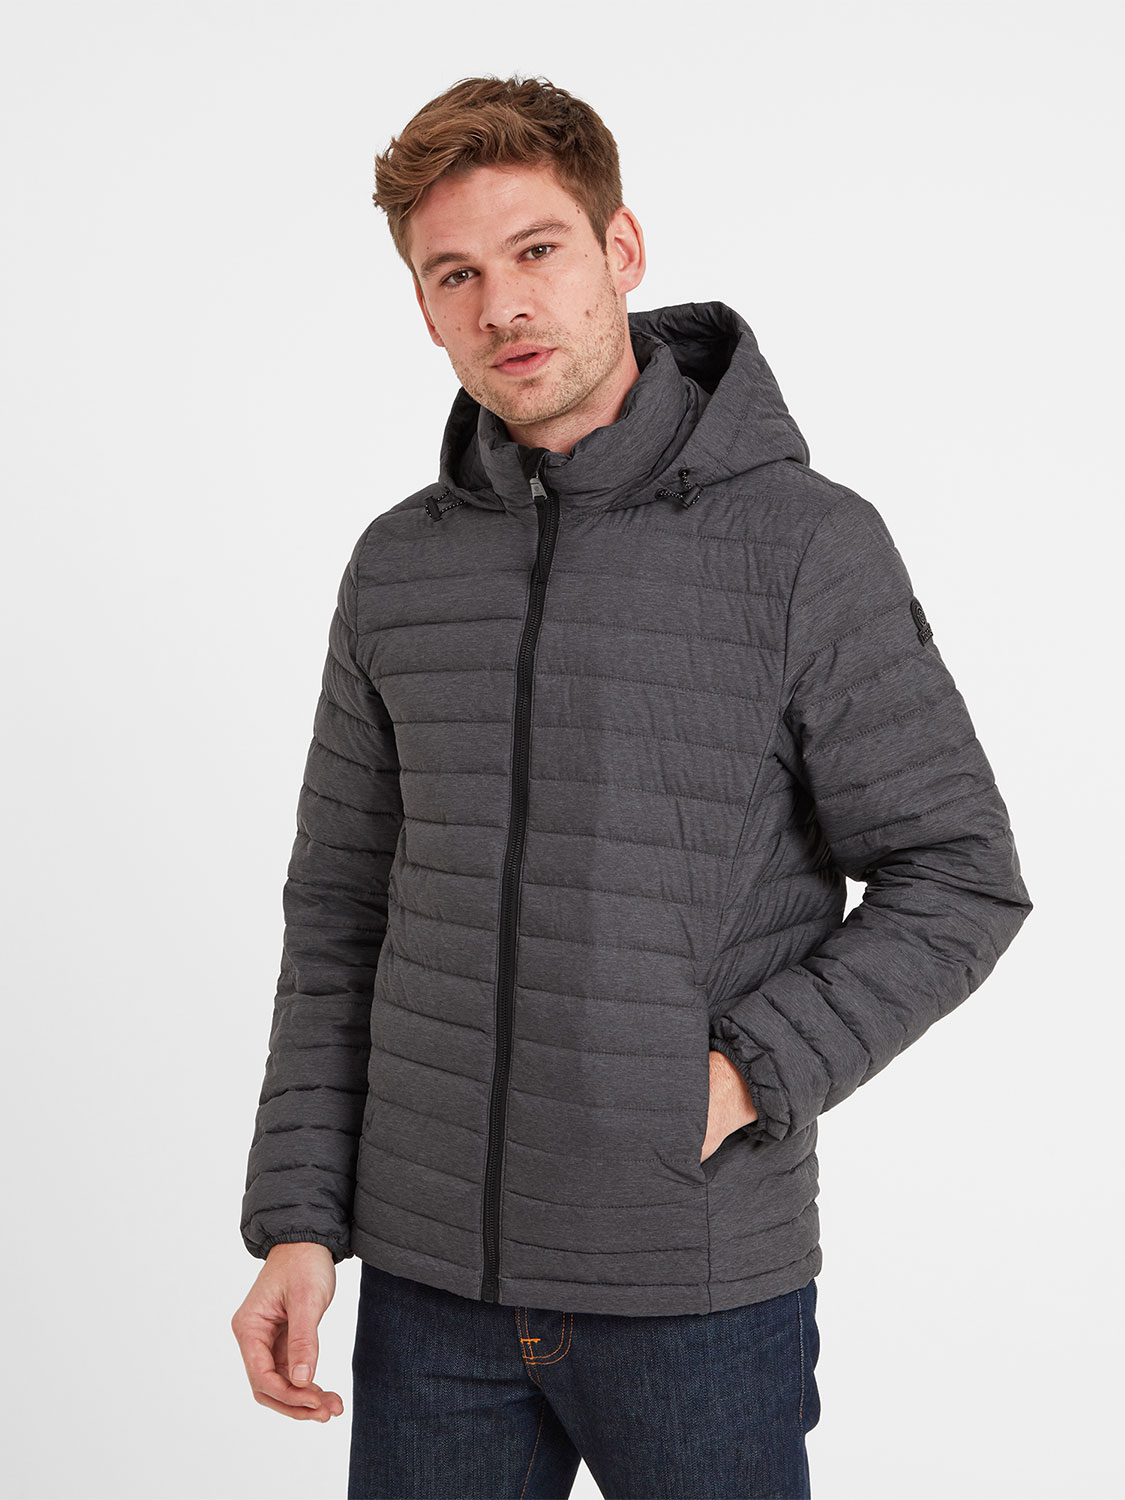 Bowburn Padded Jacket - Size: 4XL Men’s Grey Tog24